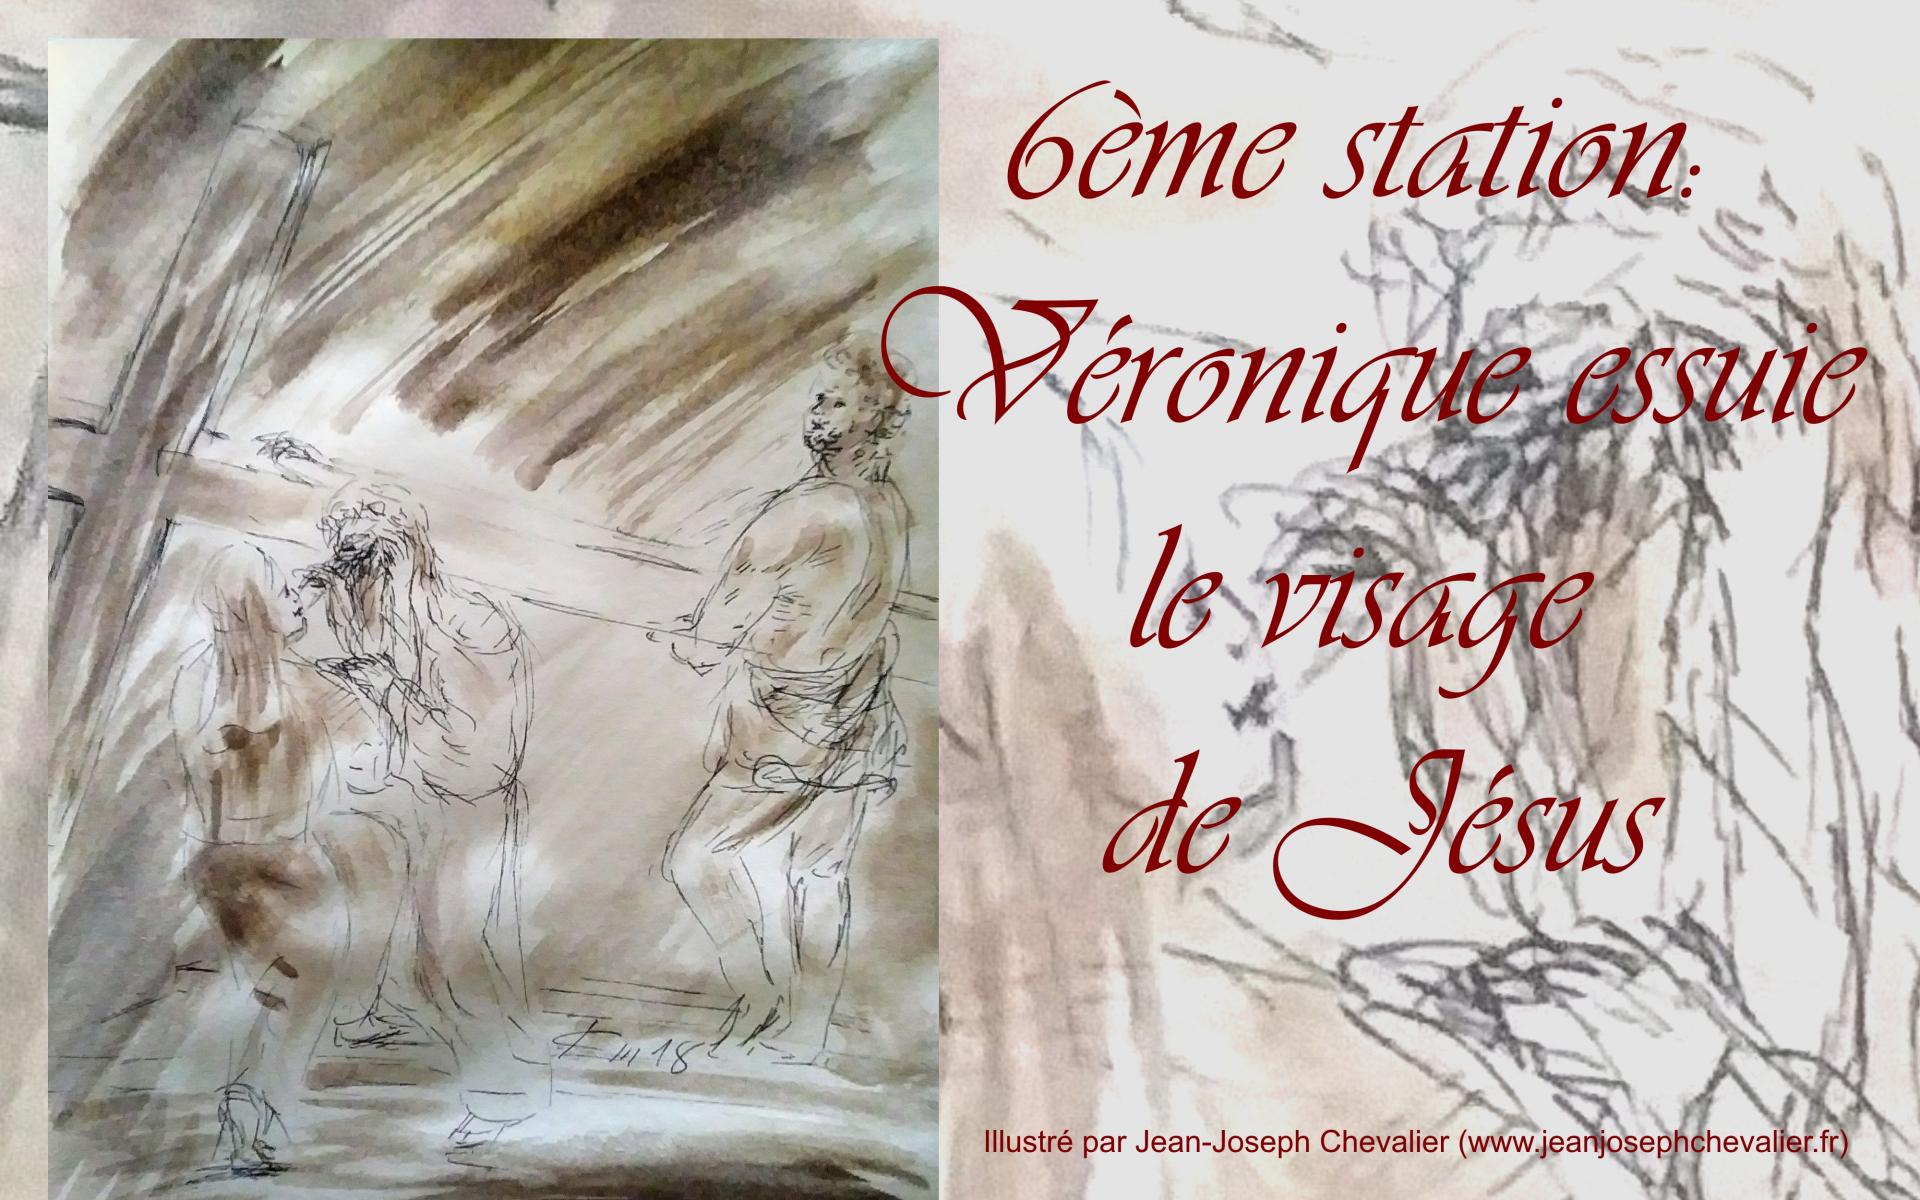 6 chemin de croix sixieme station veronnique essuie le visage de jesus dessin au lavis de jean joseph chevalier vi